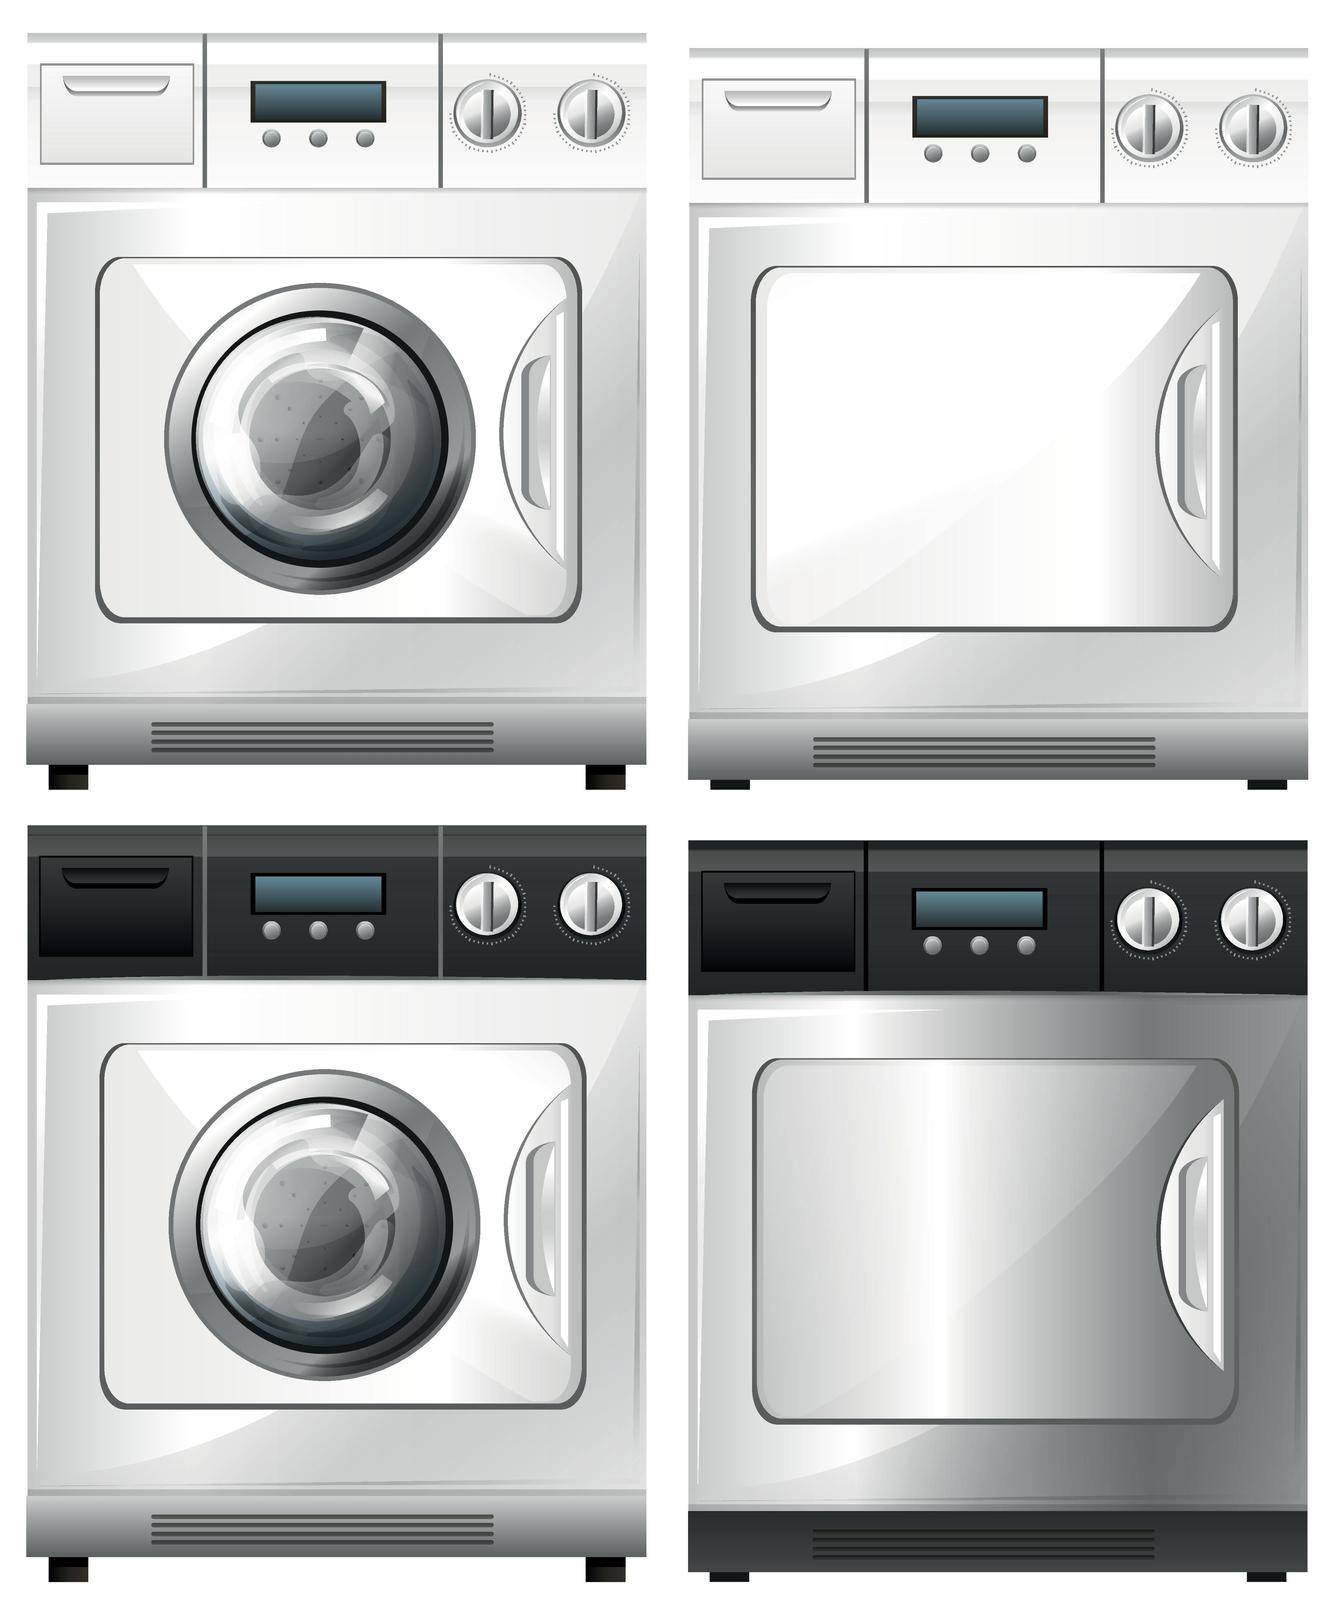 Washing machine and dryer machine illustration